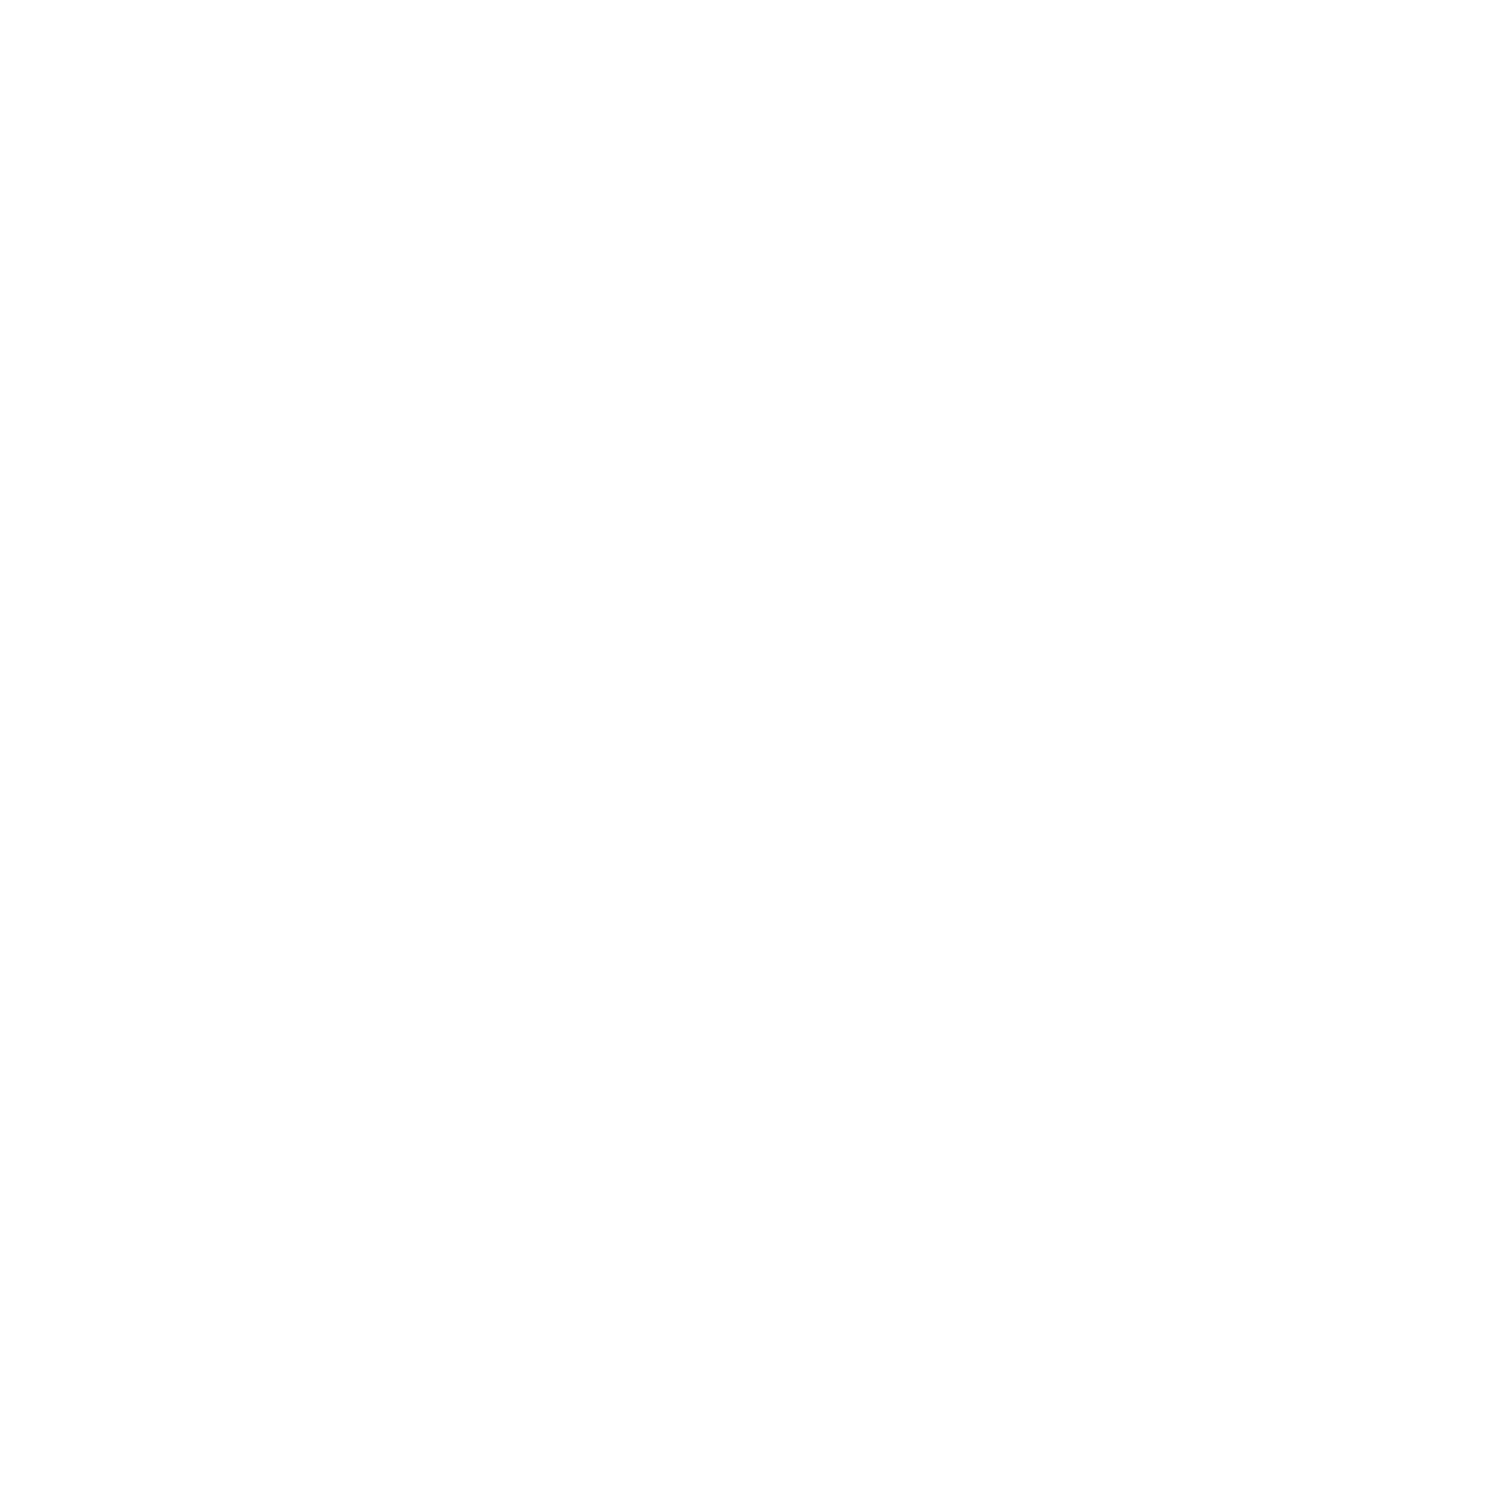 Solheisen